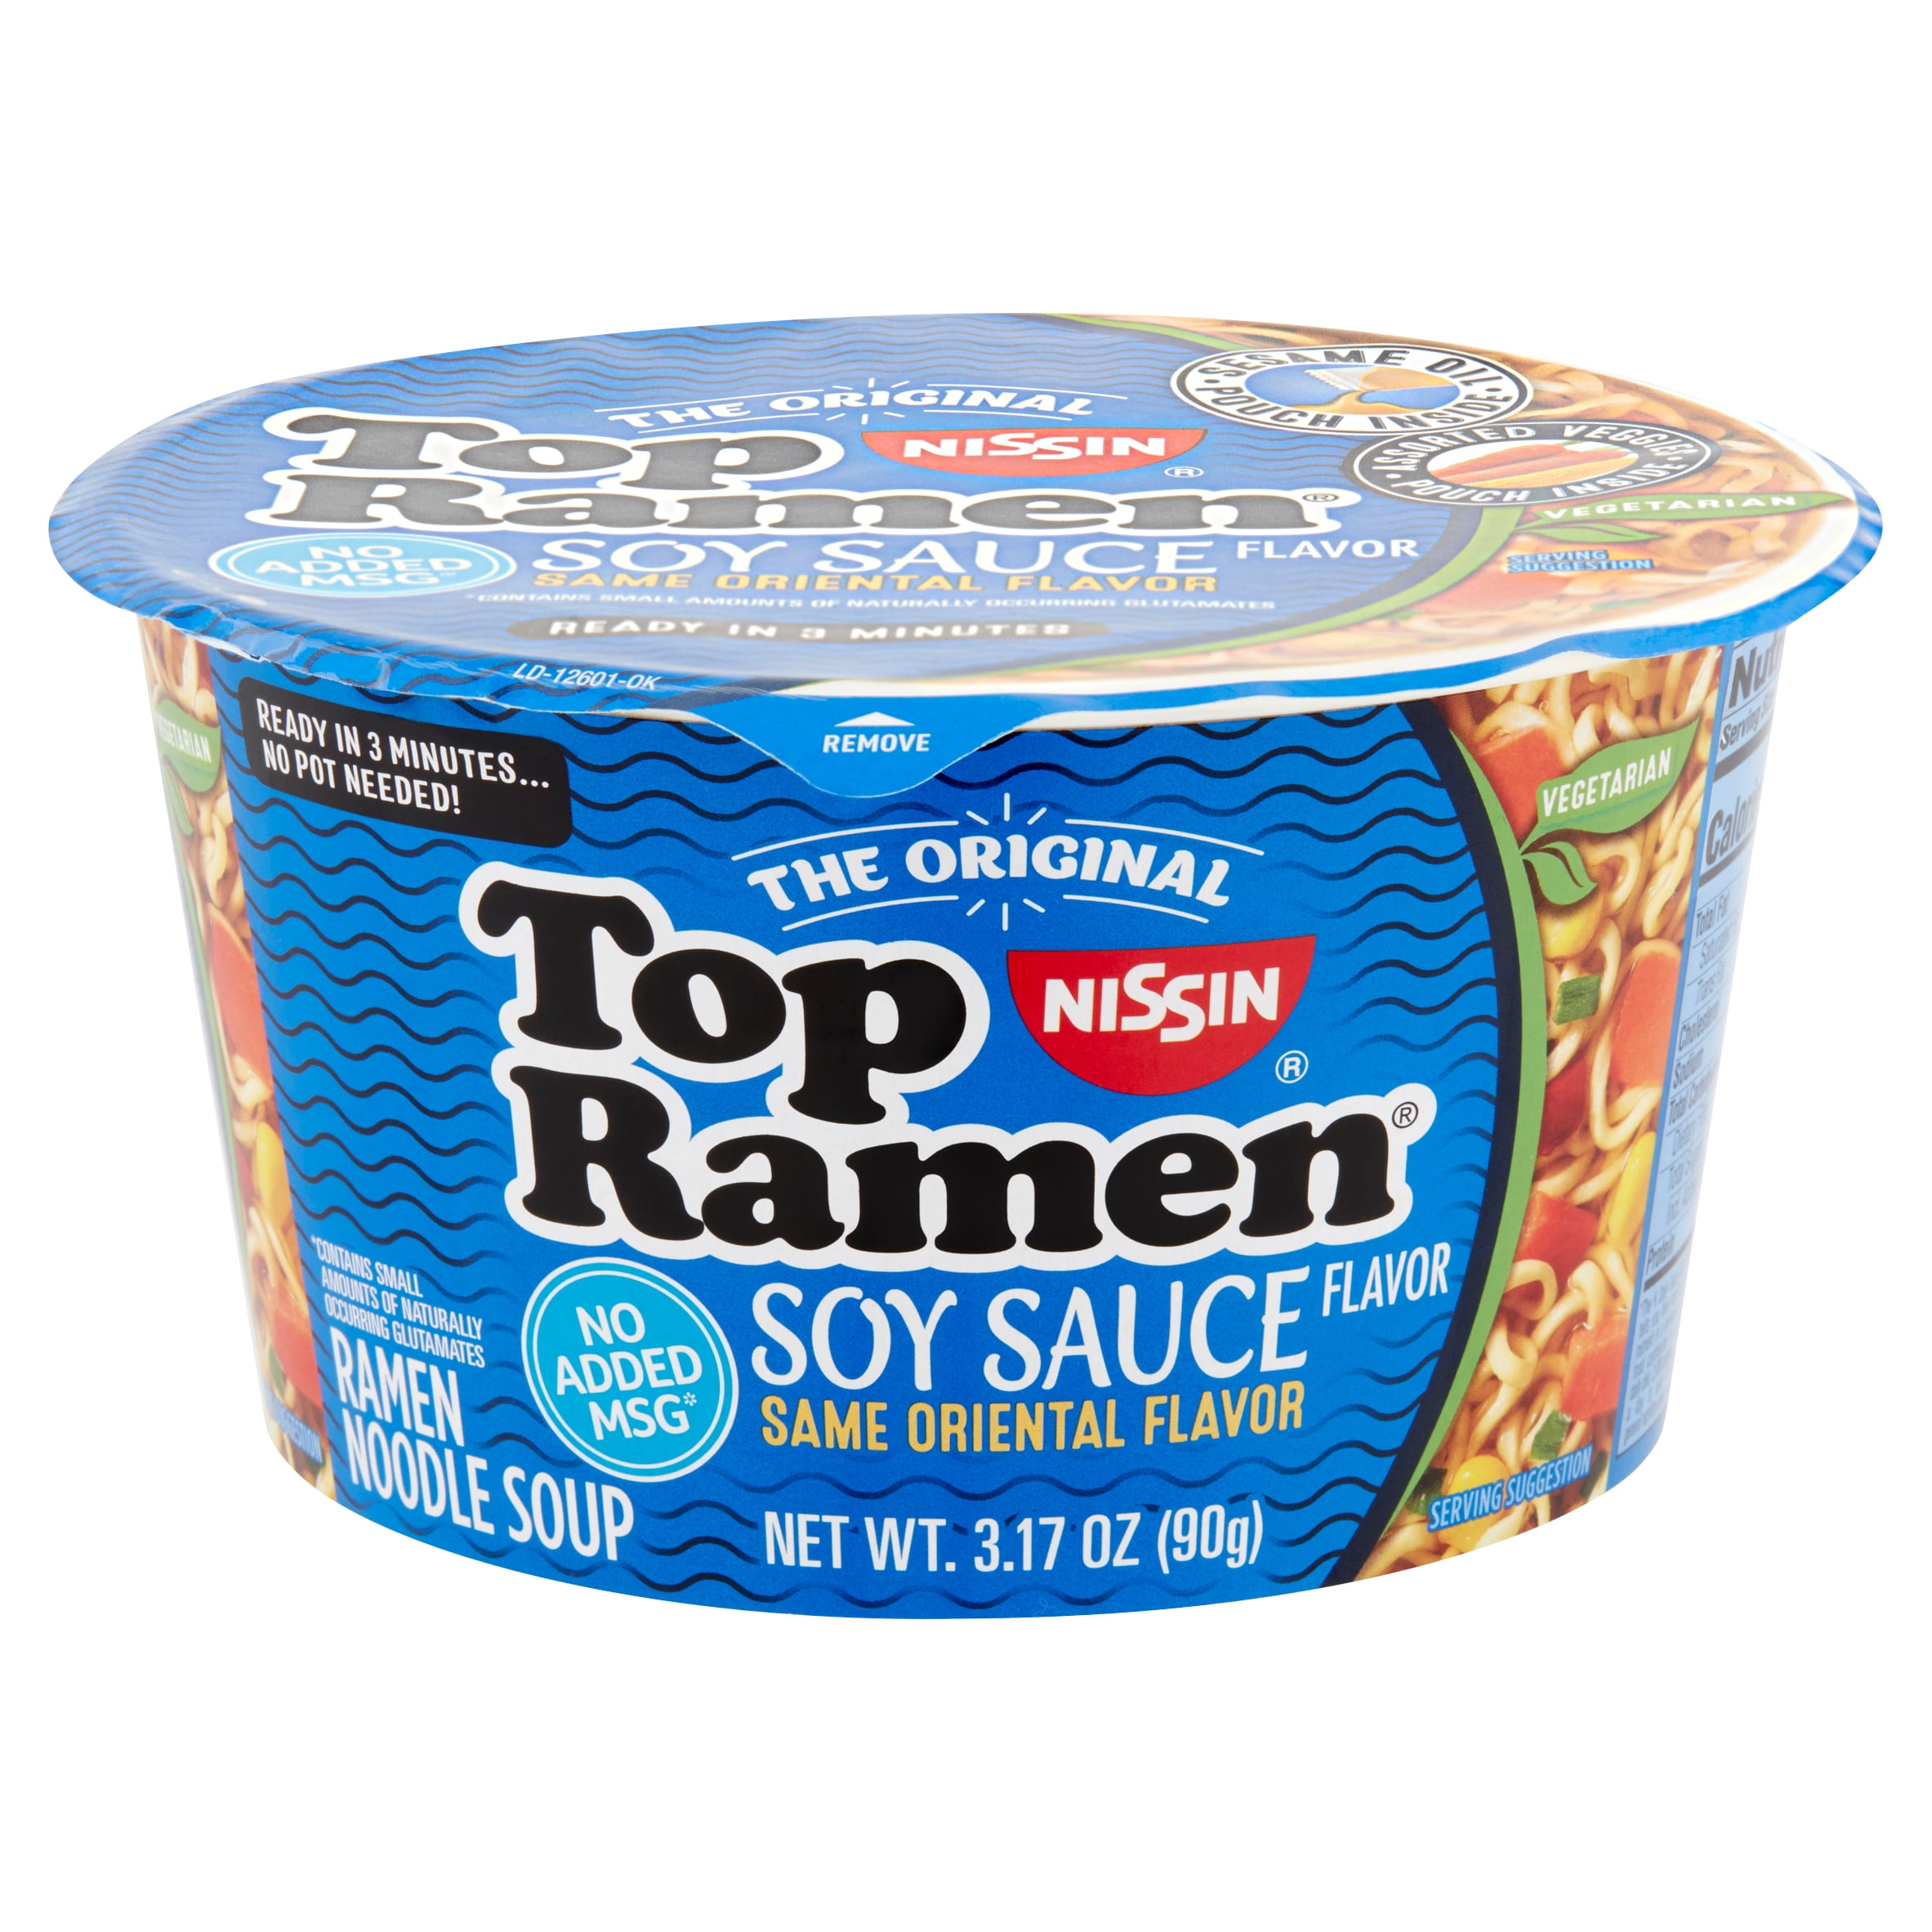 Nissin The Original Top Ramen Soy Sauce Flavor Ramen Noodle Soup 3 17 Oz Walmart Com Walmart Com